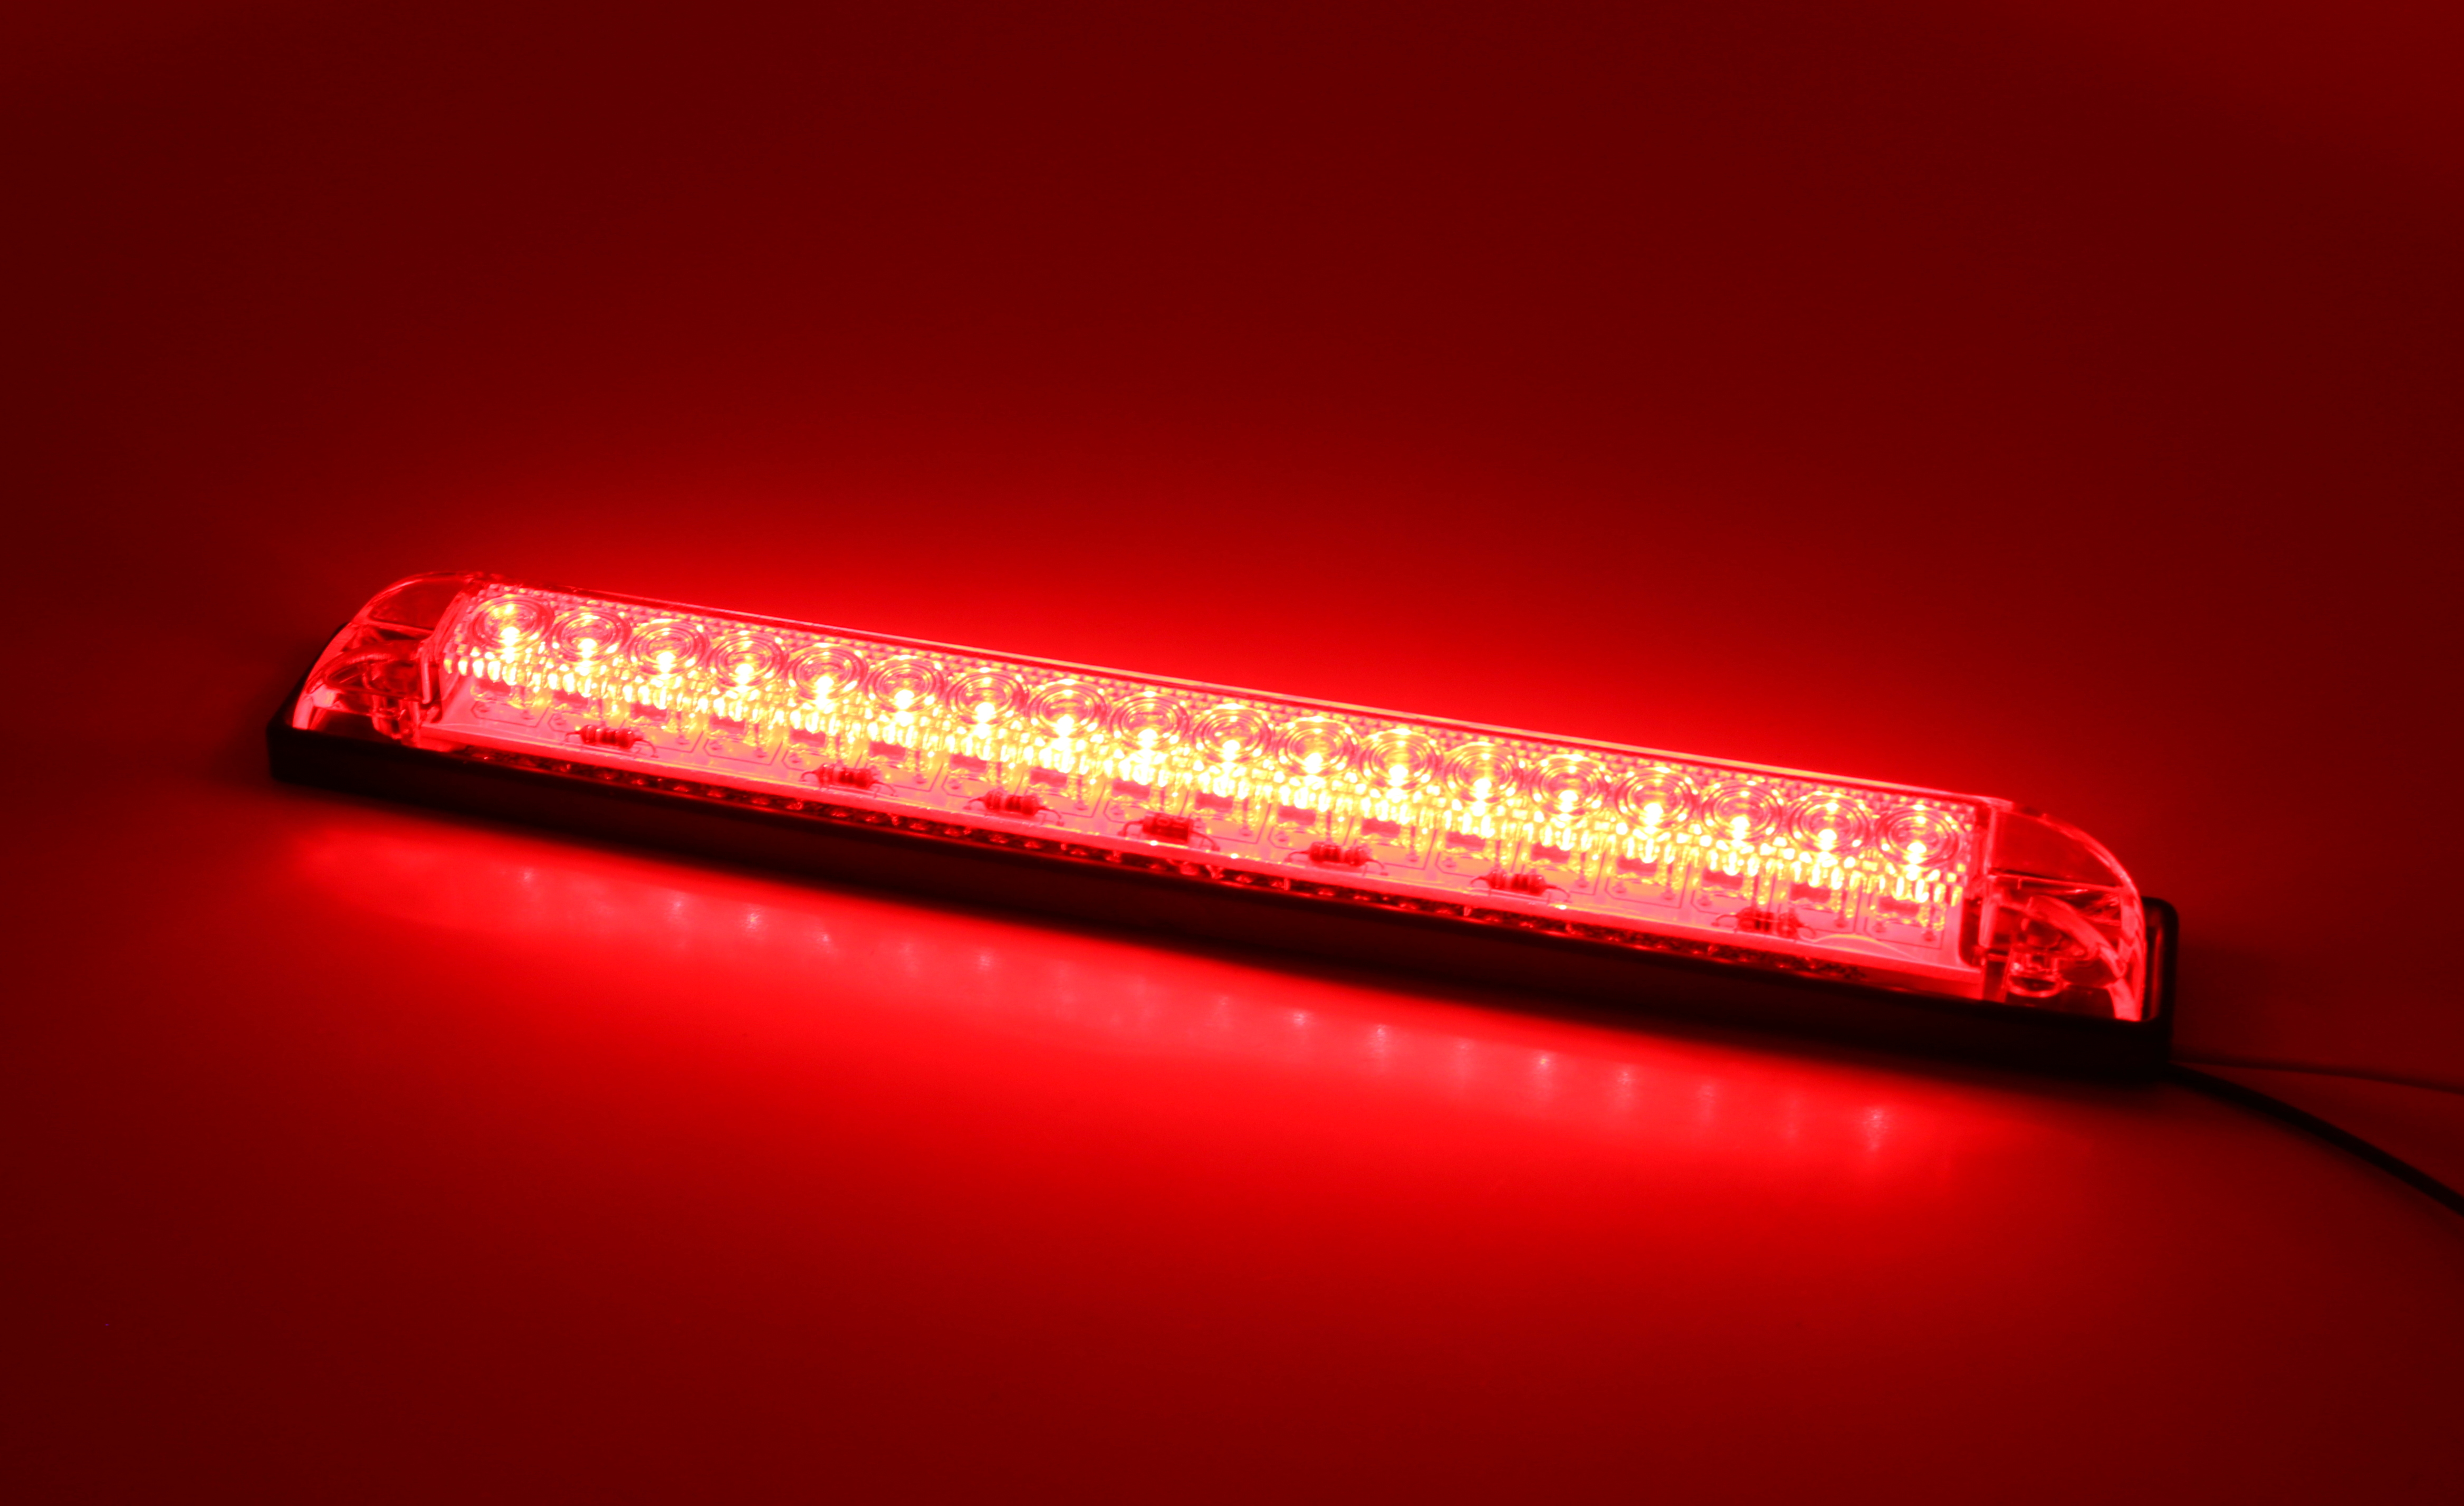 RED or AMBER LED Strip - HEAVY DUTY 12VDC 8" LENGTH | PilotLights.net